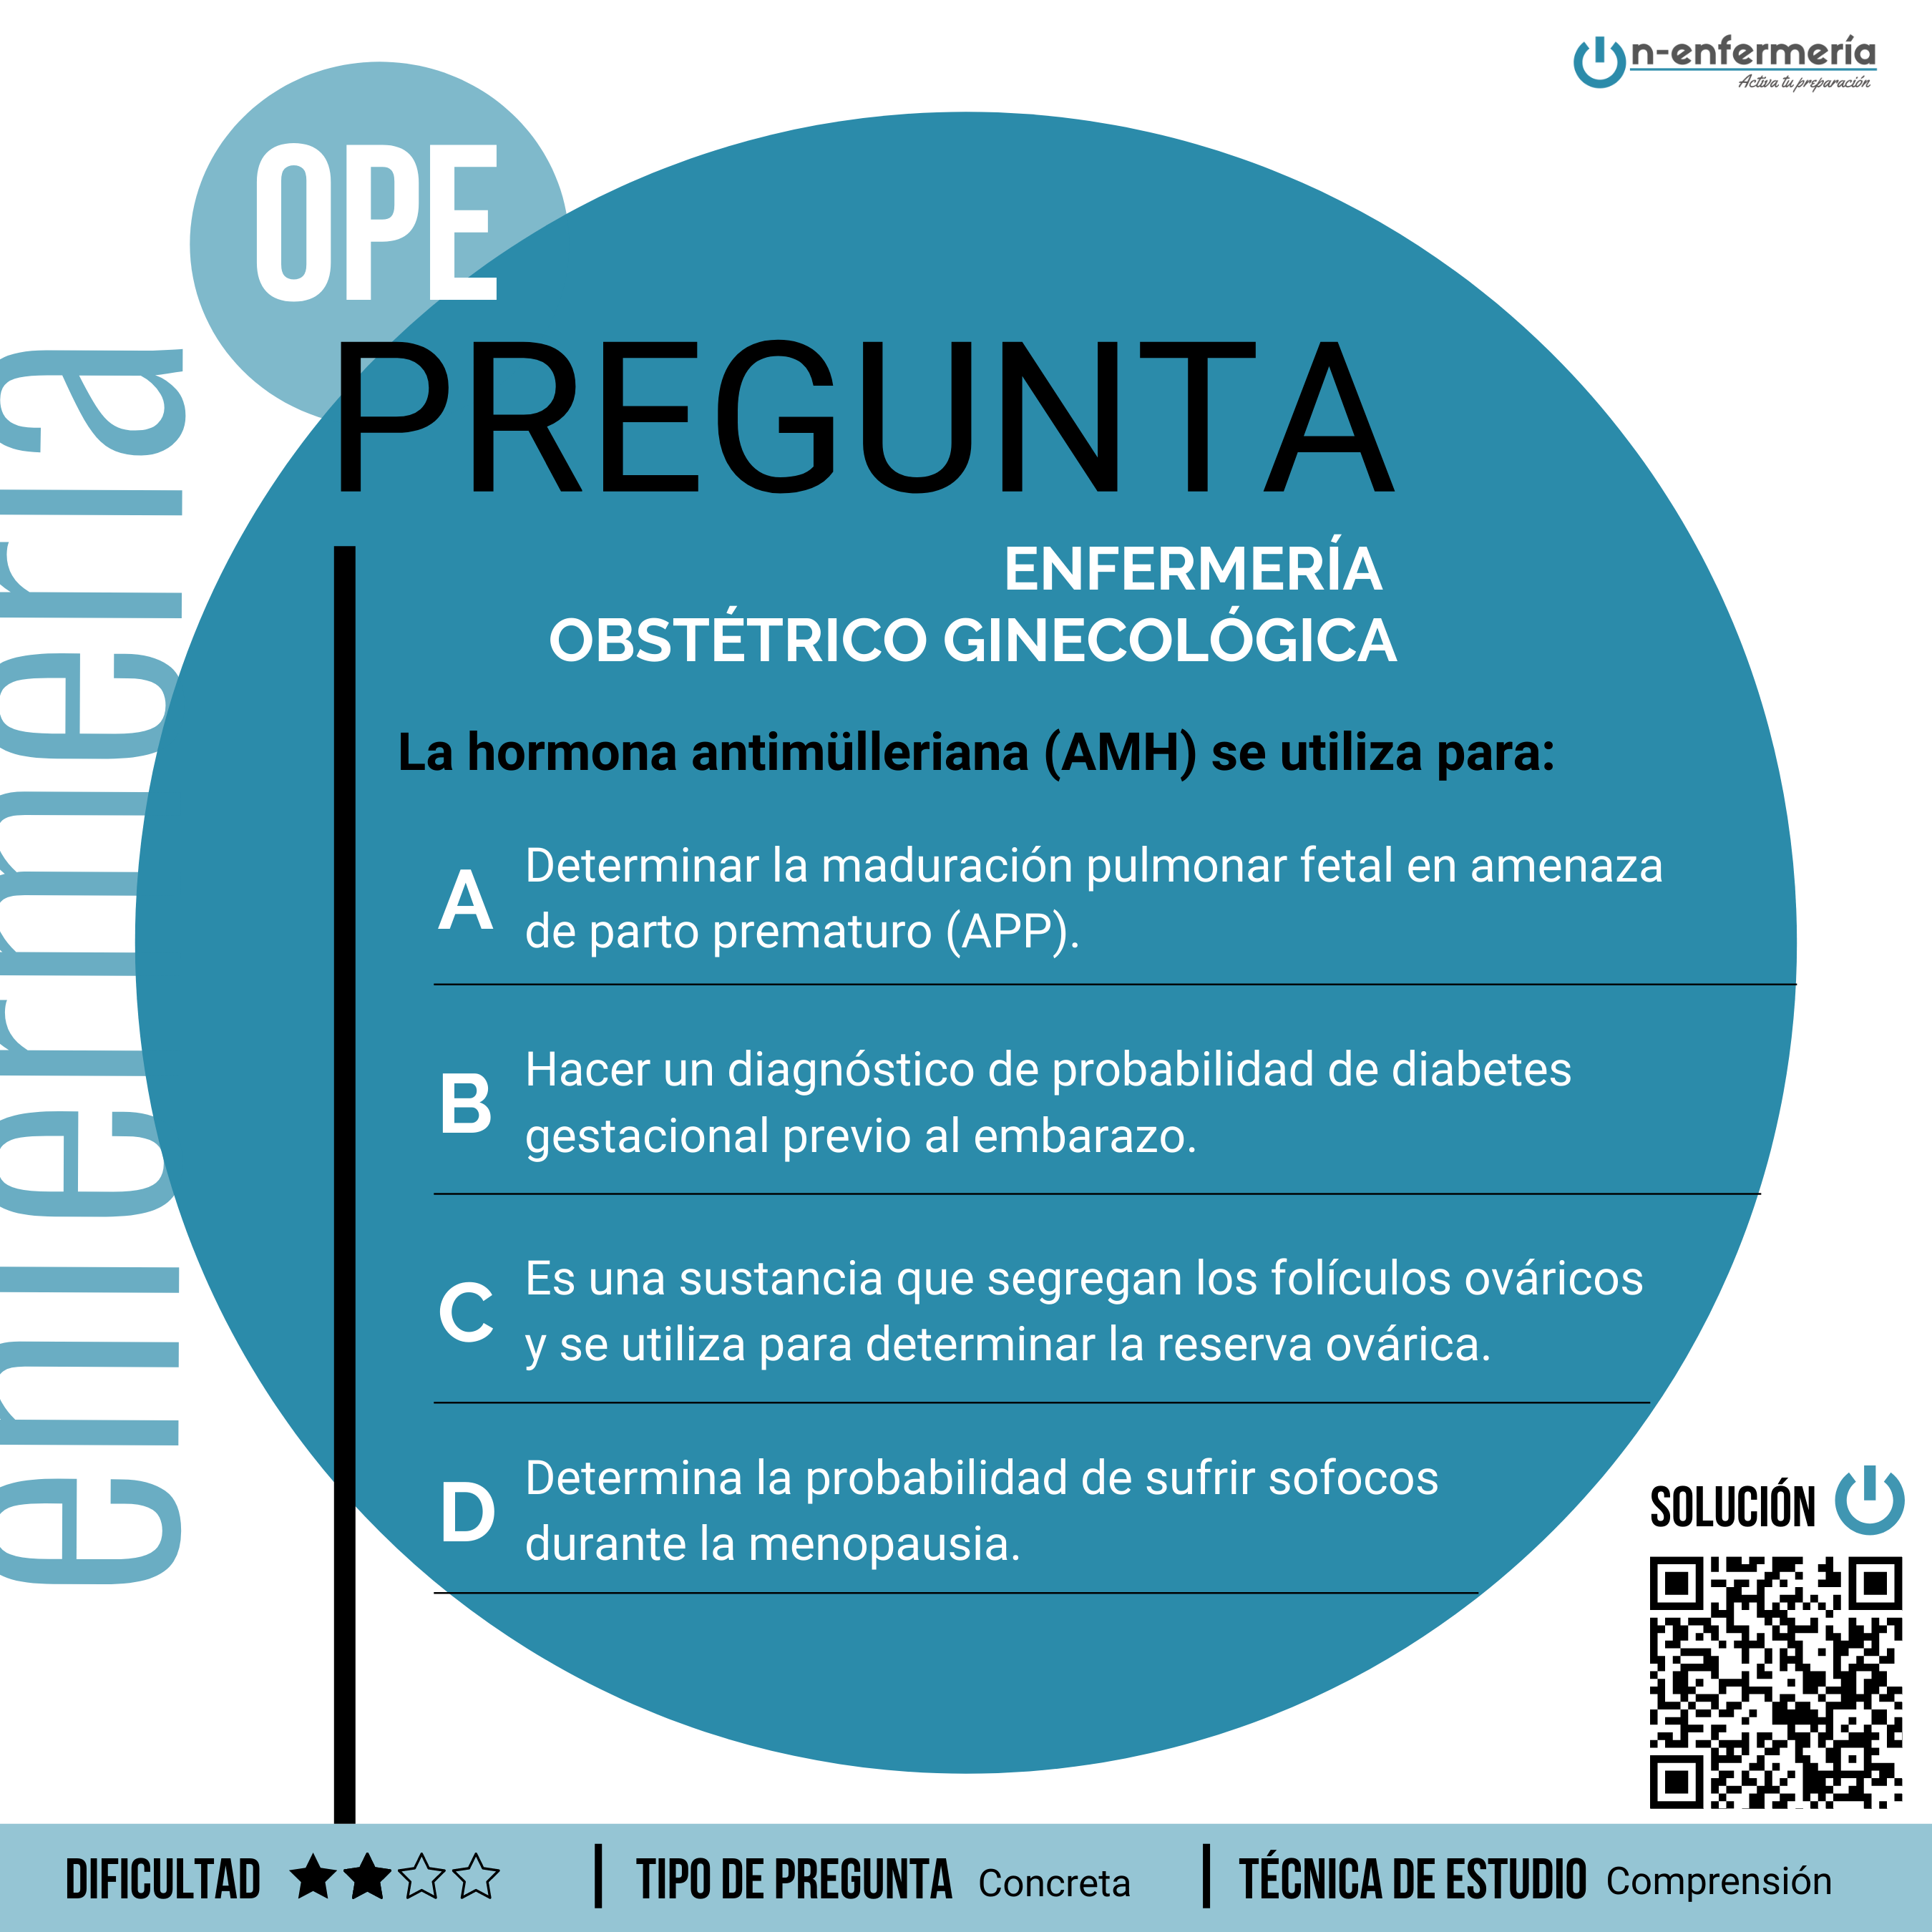 Pregunta de examen OPE Enfermería - Enfermería obstétrico ginecológica